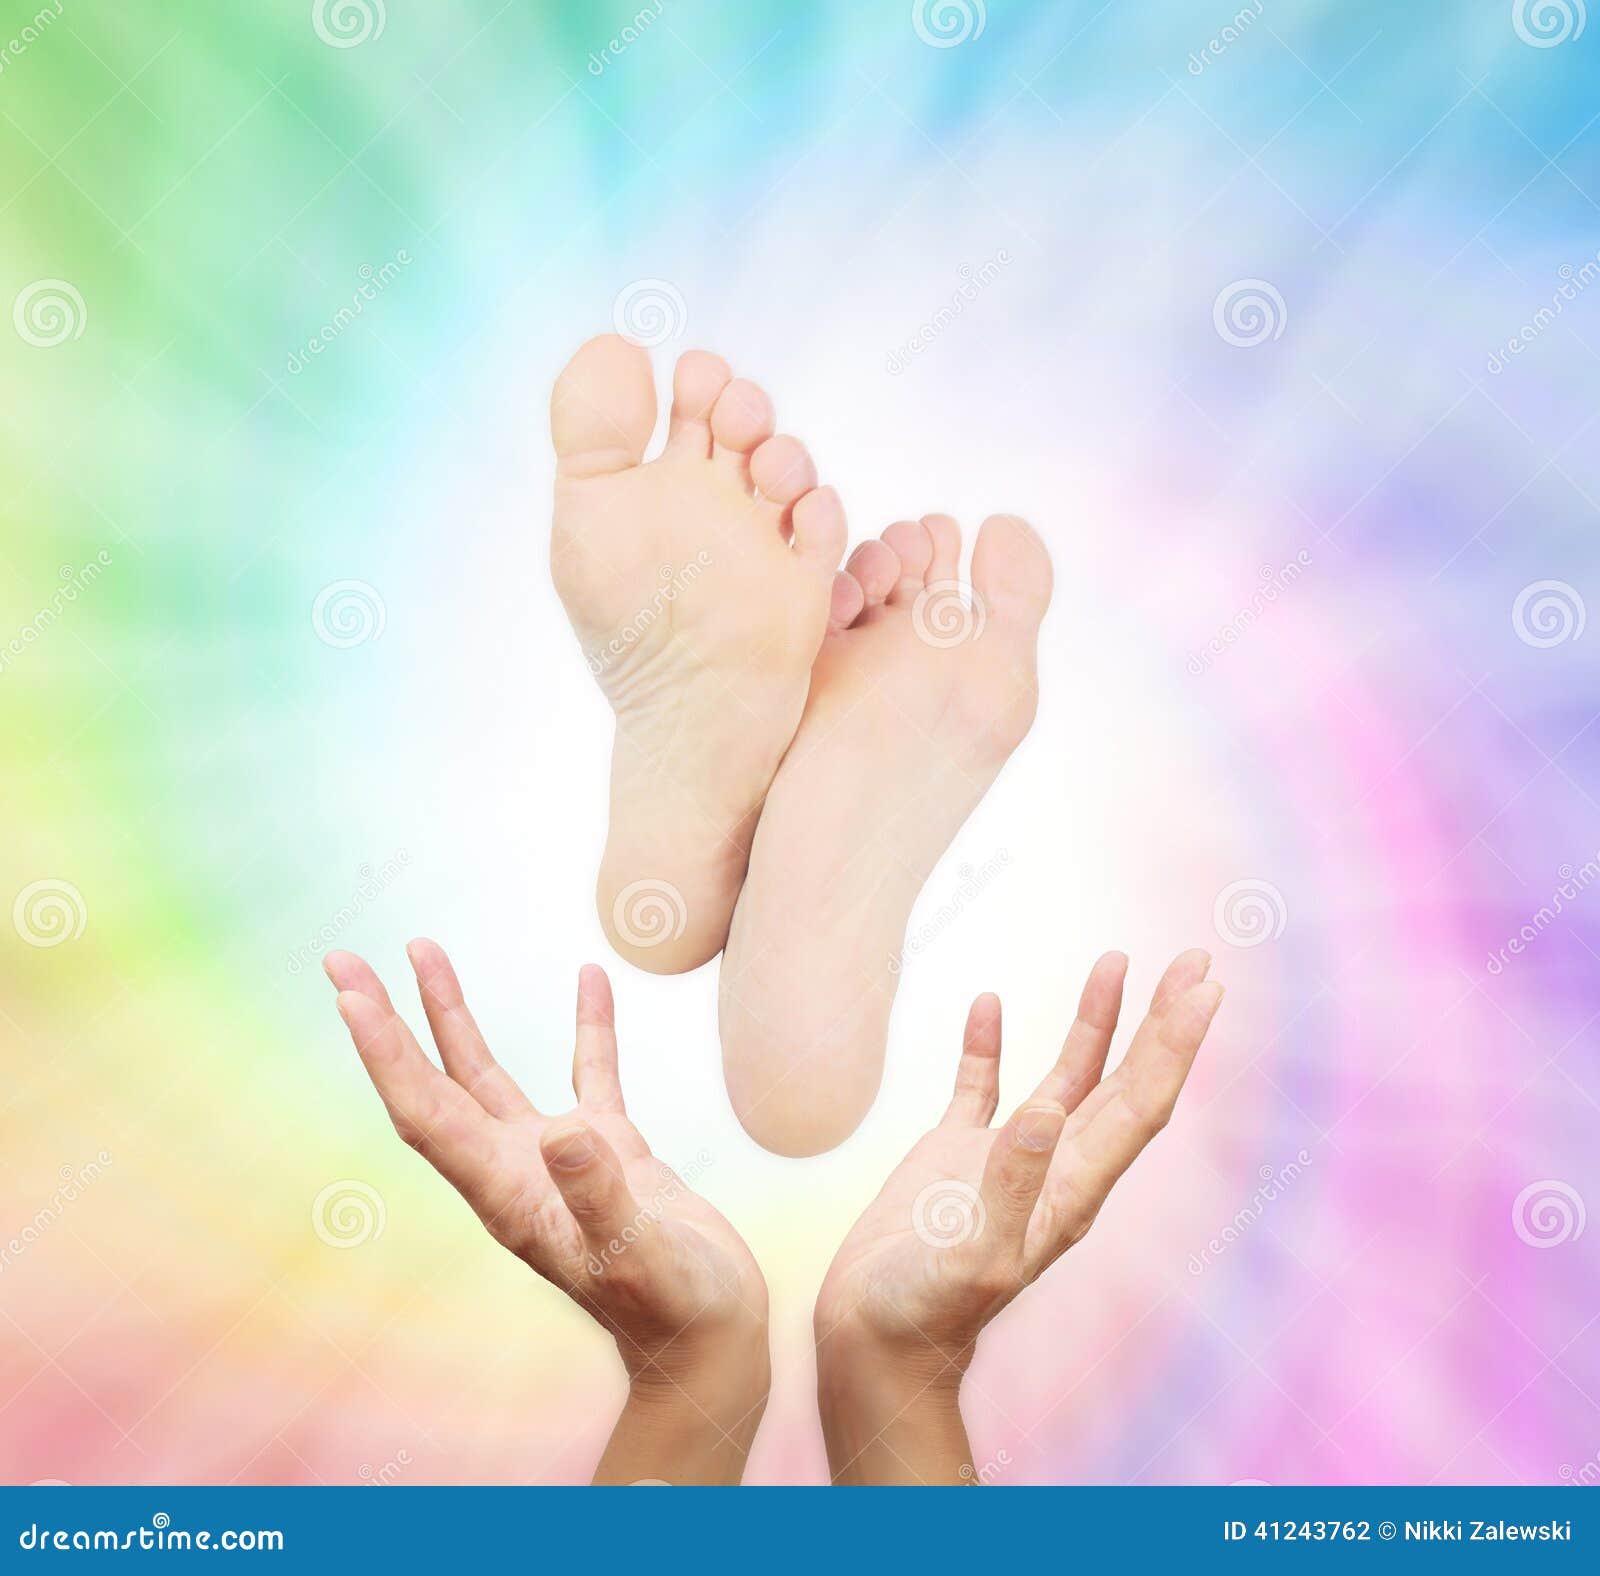 healing feet